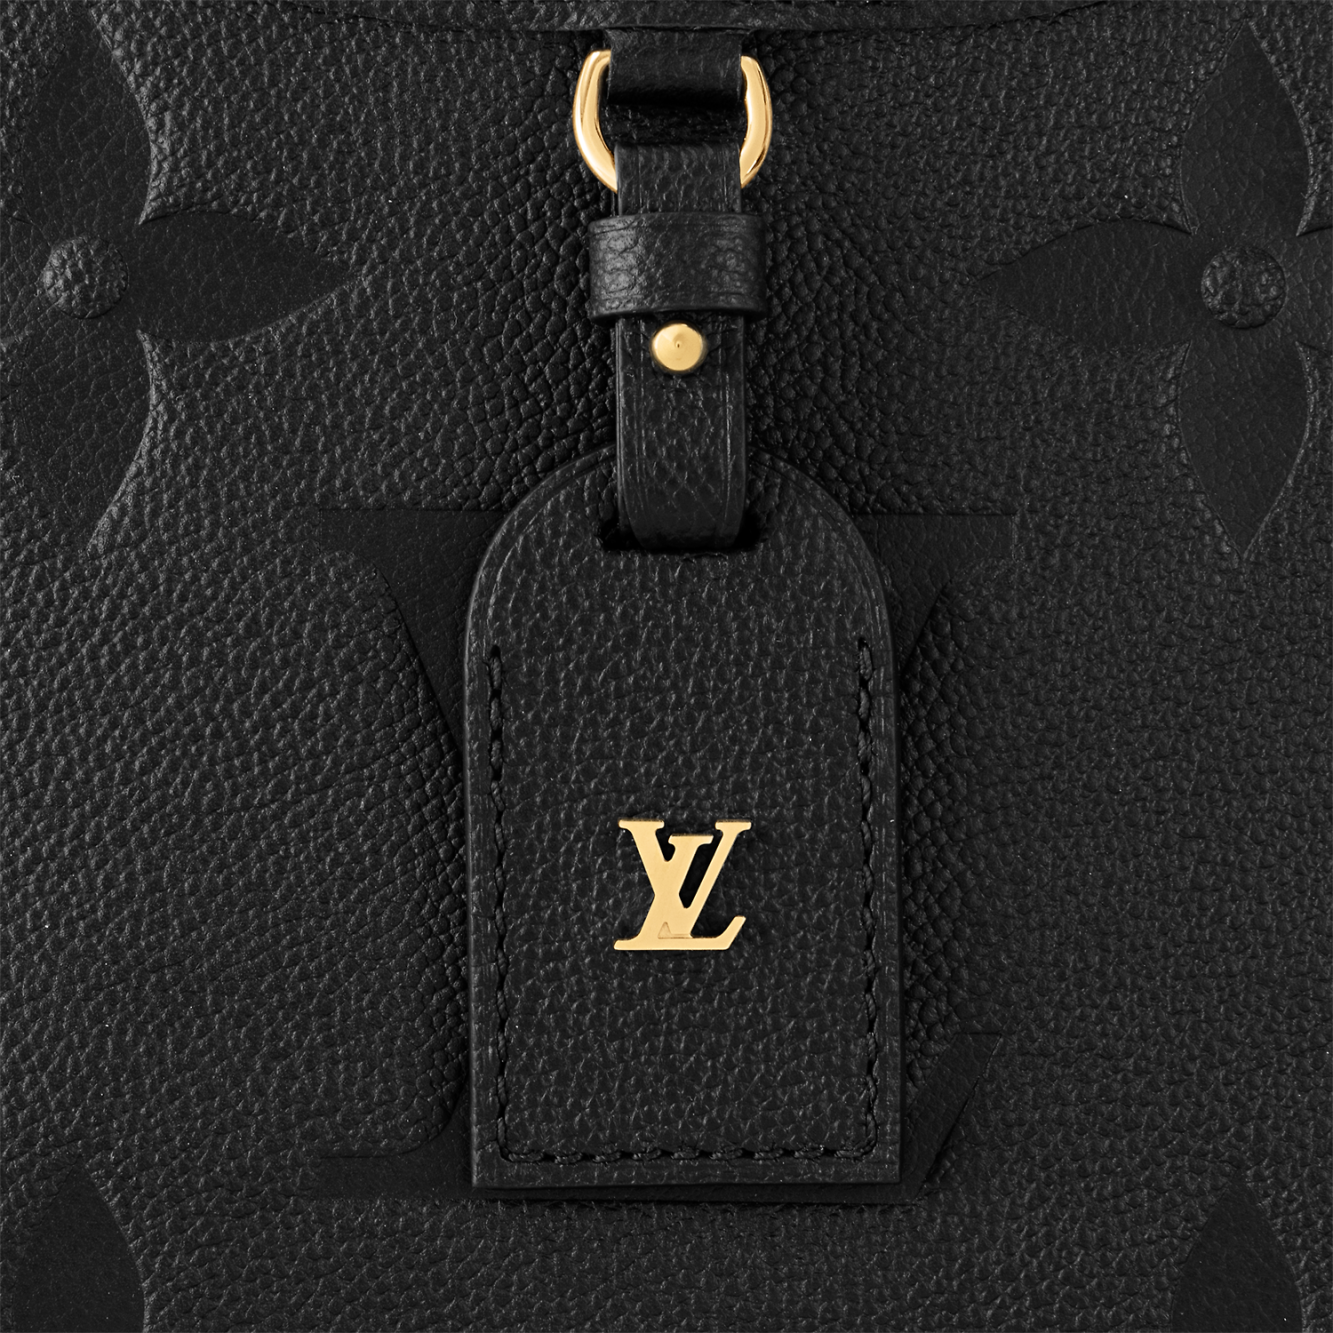 Louis Vuitton Torba 'OnTheGo PM' - sklep Vitkac